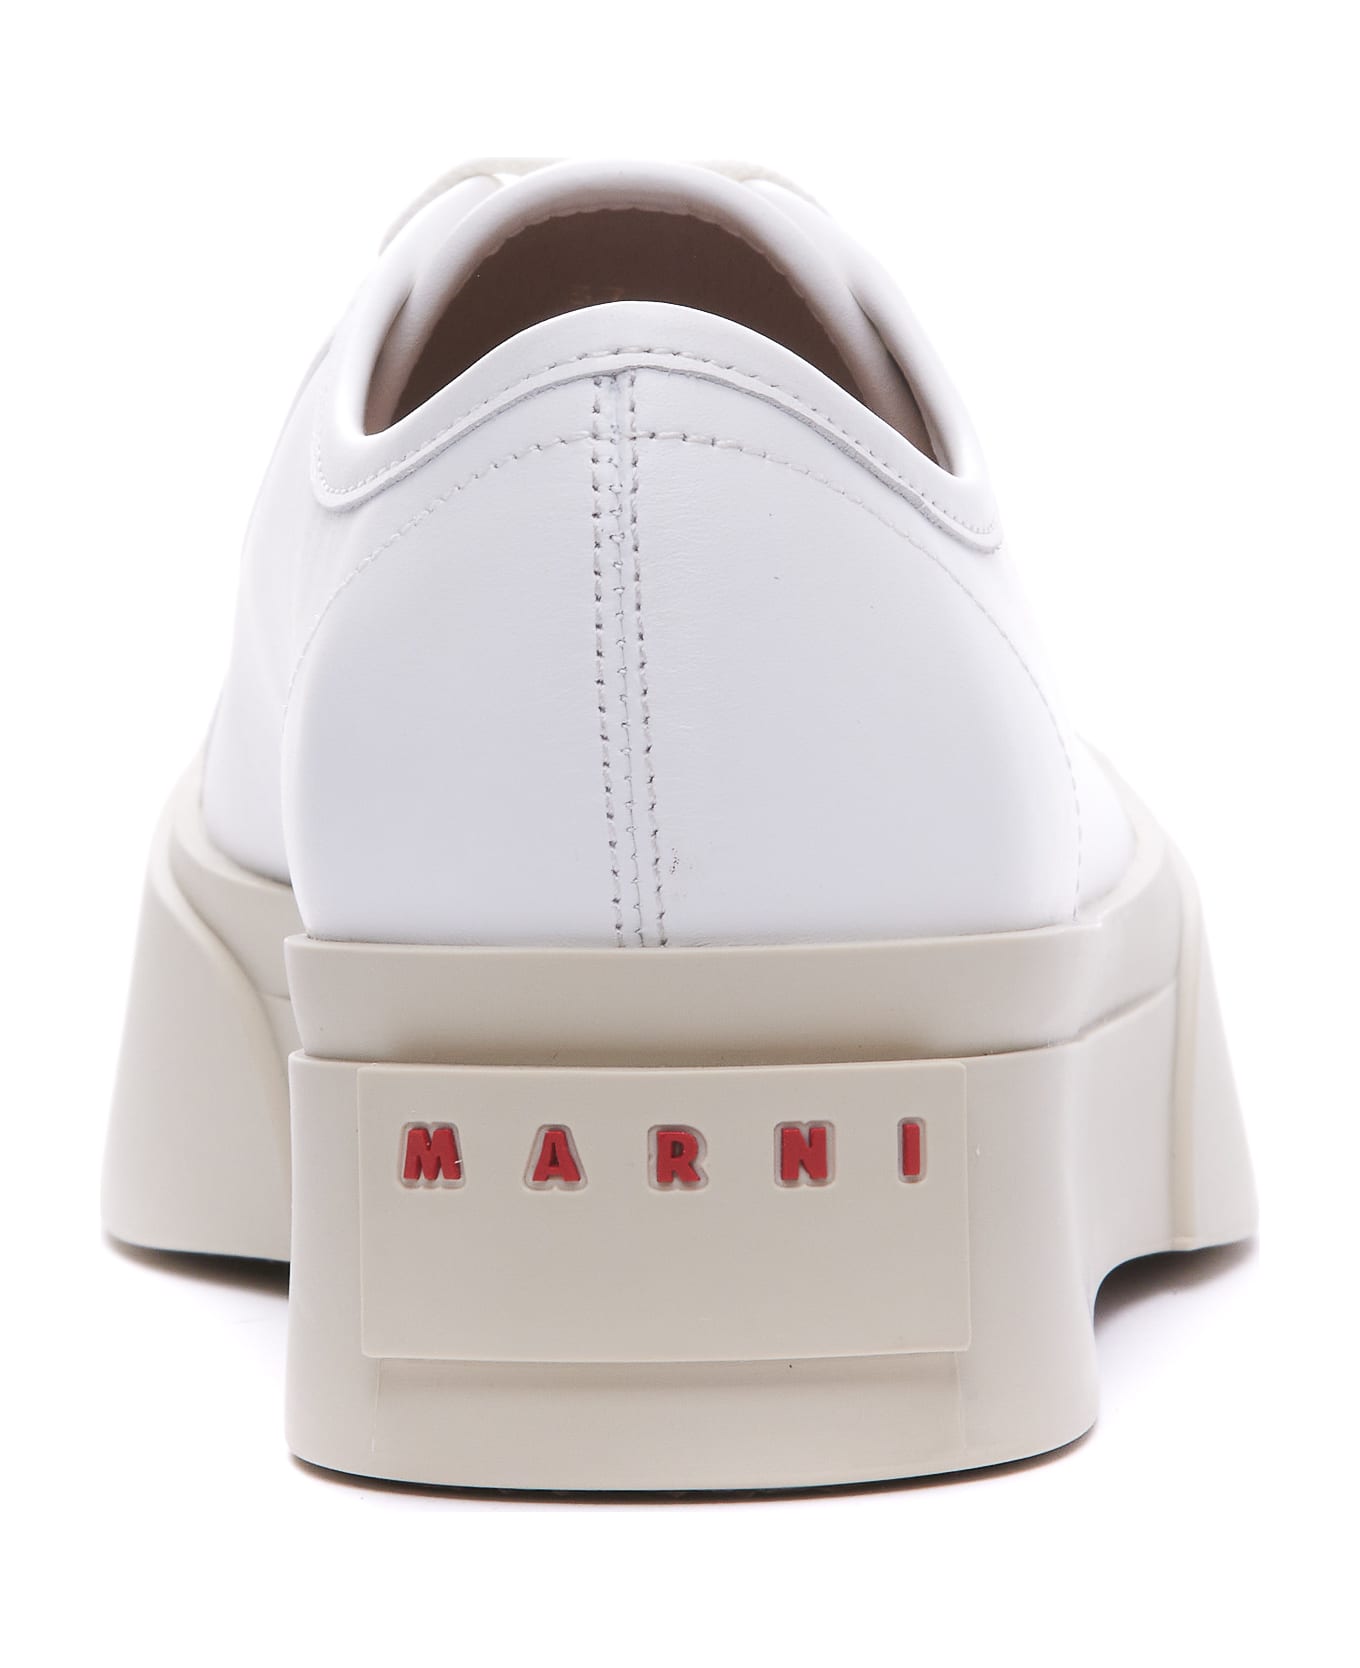 Marni Pablo Sneakers - White